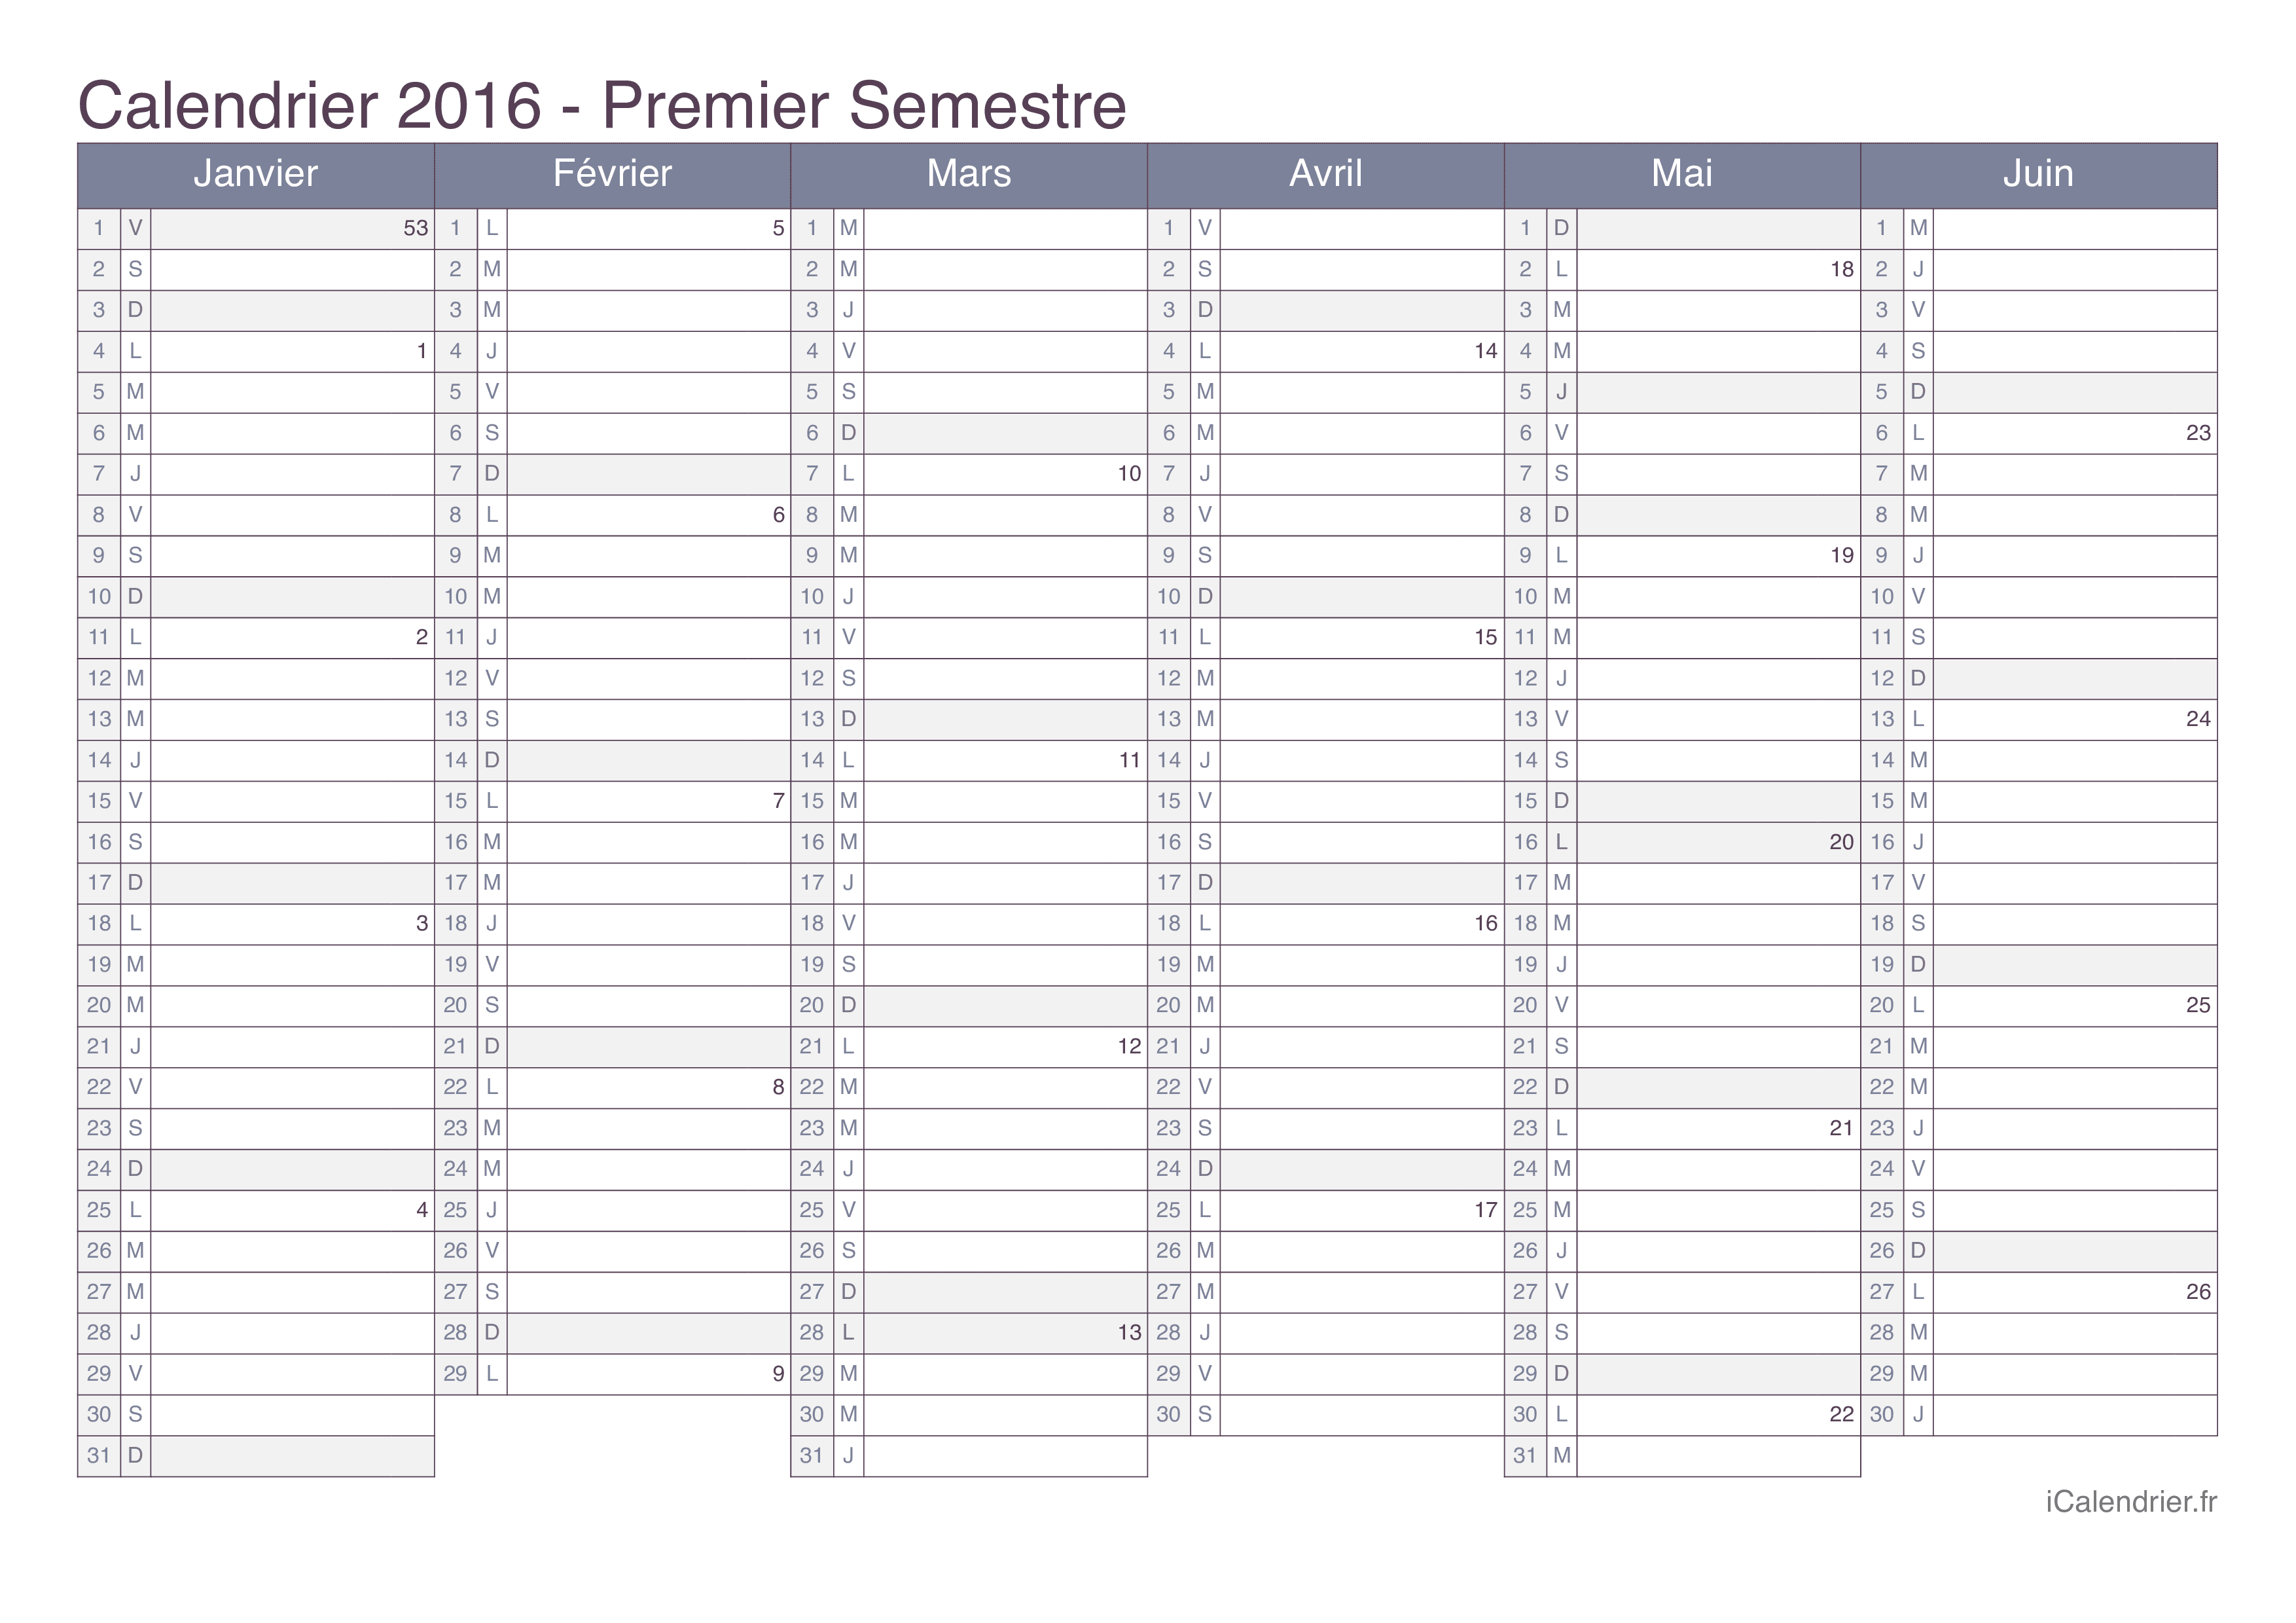 Calendrier par semestre avec numéros des semaines 2016 - Office